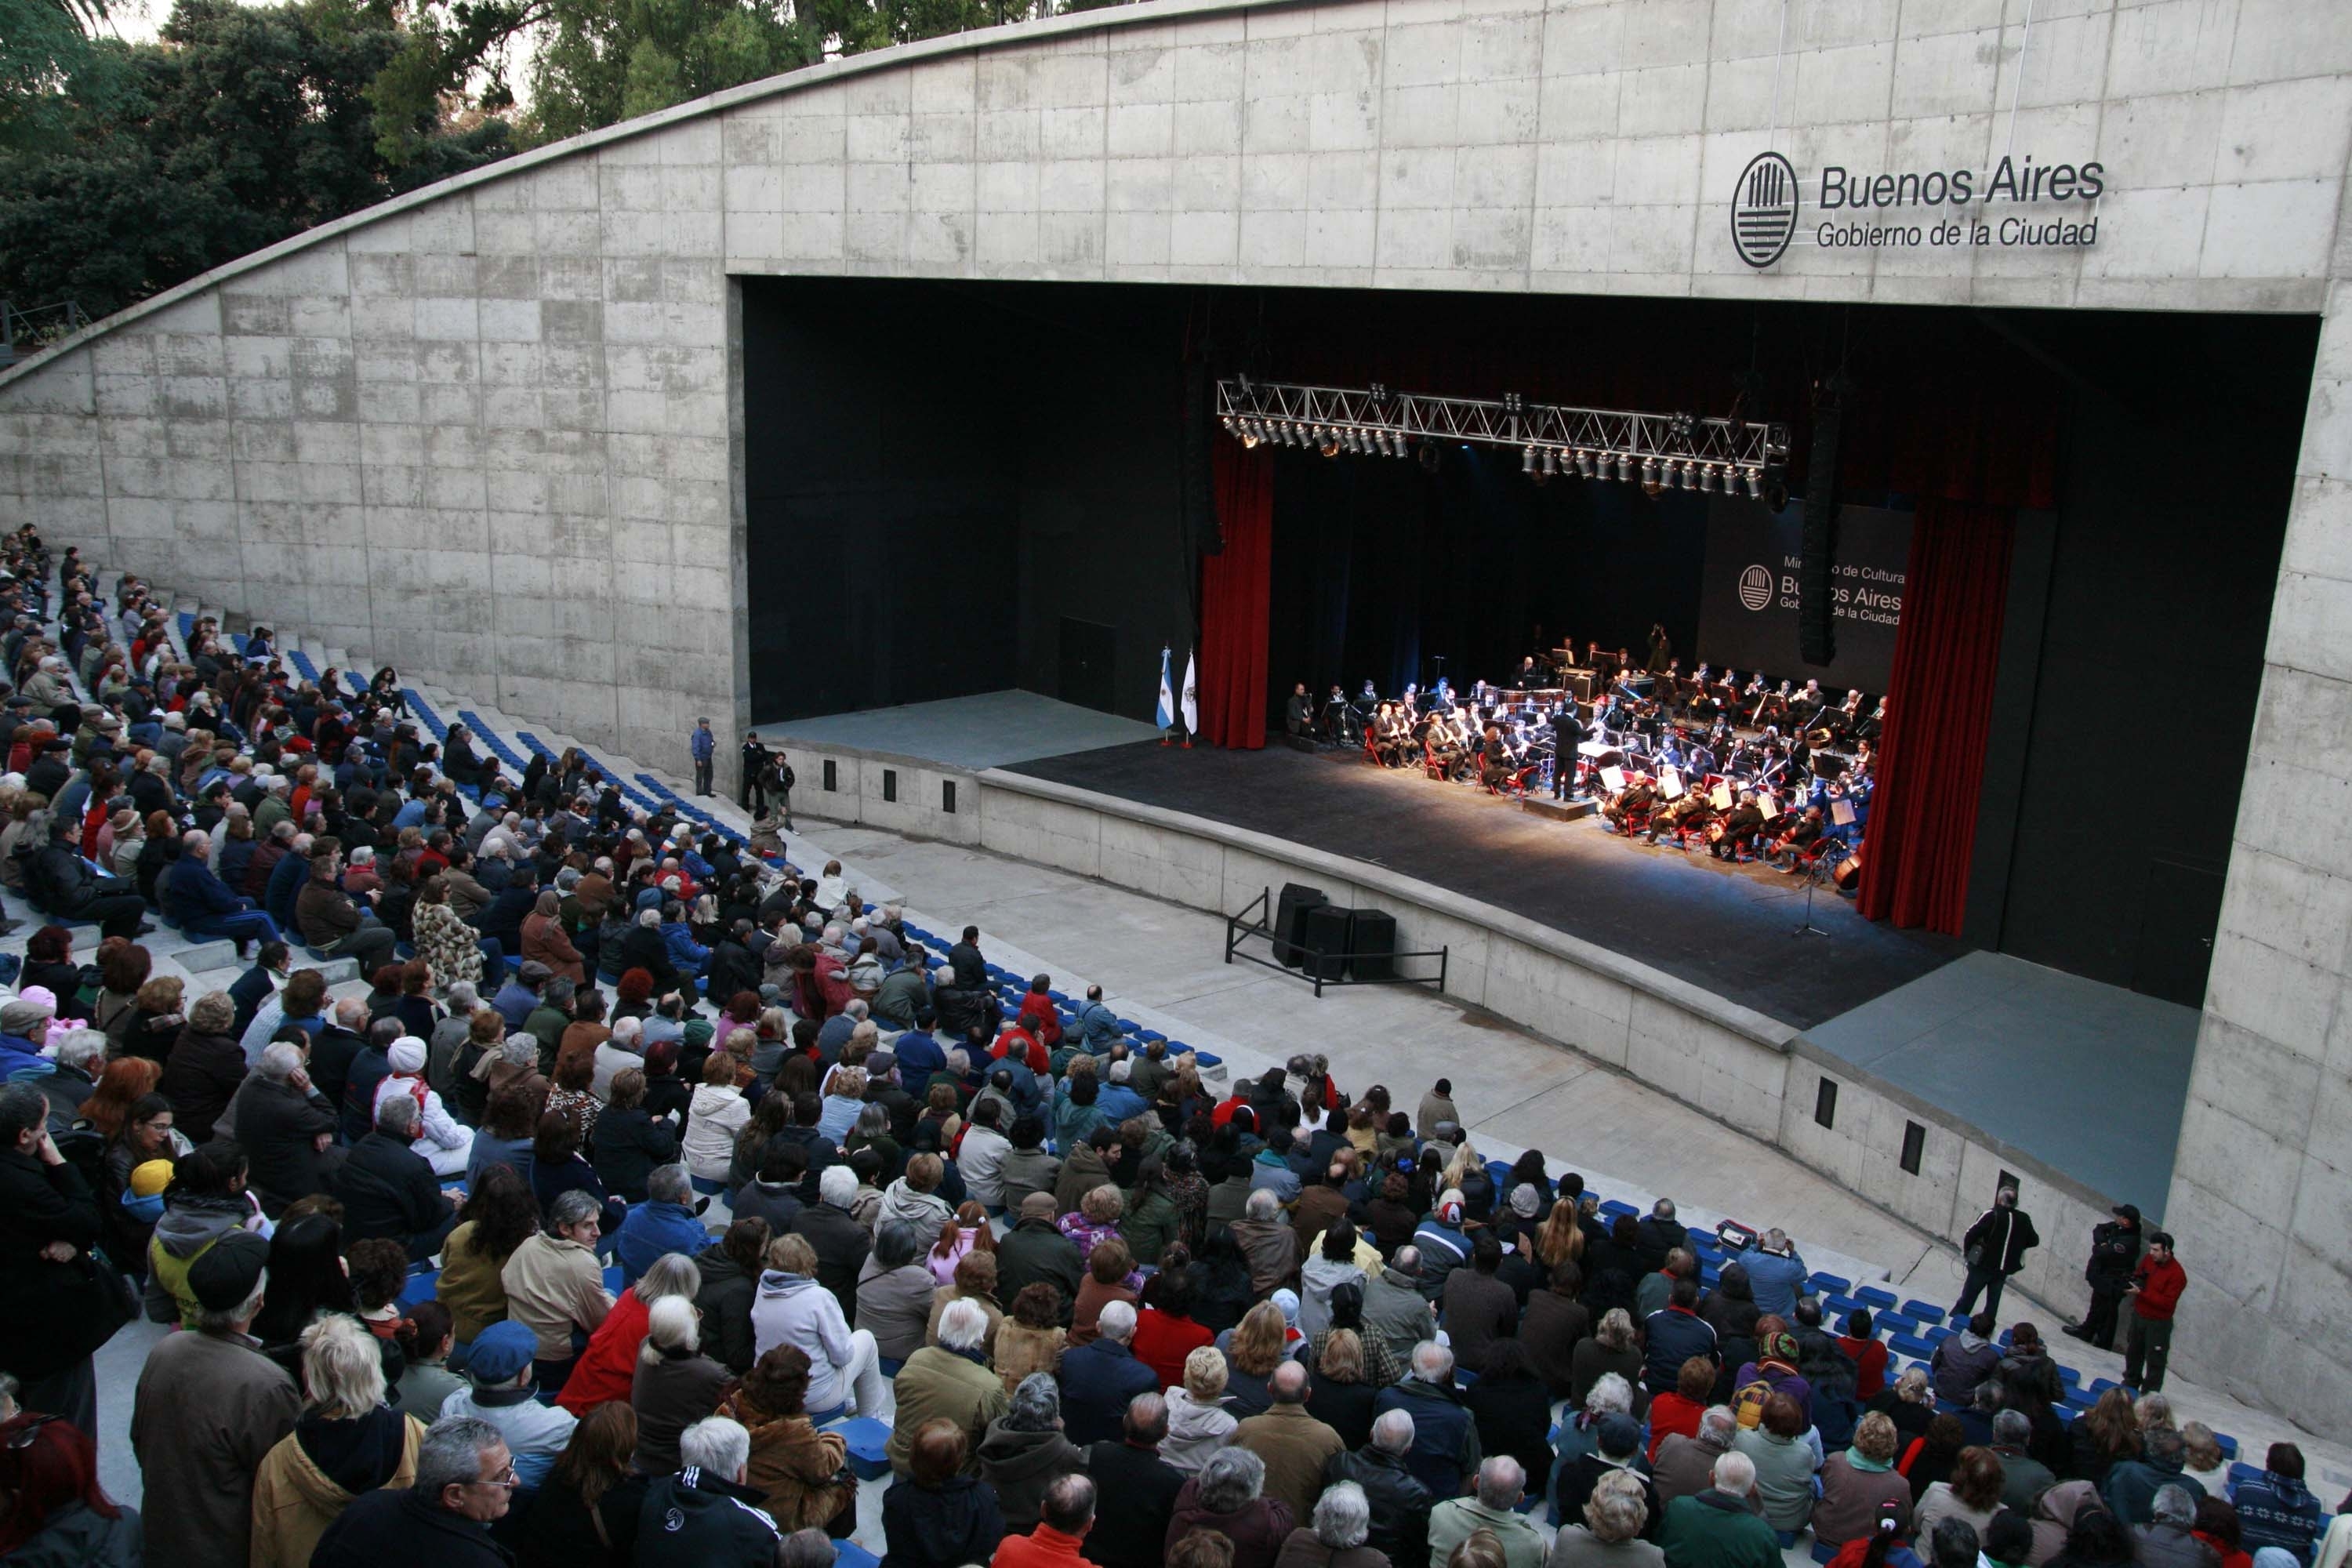 La Banda Sinfónica despide el año con un concierto gratuito en Parque Centenario